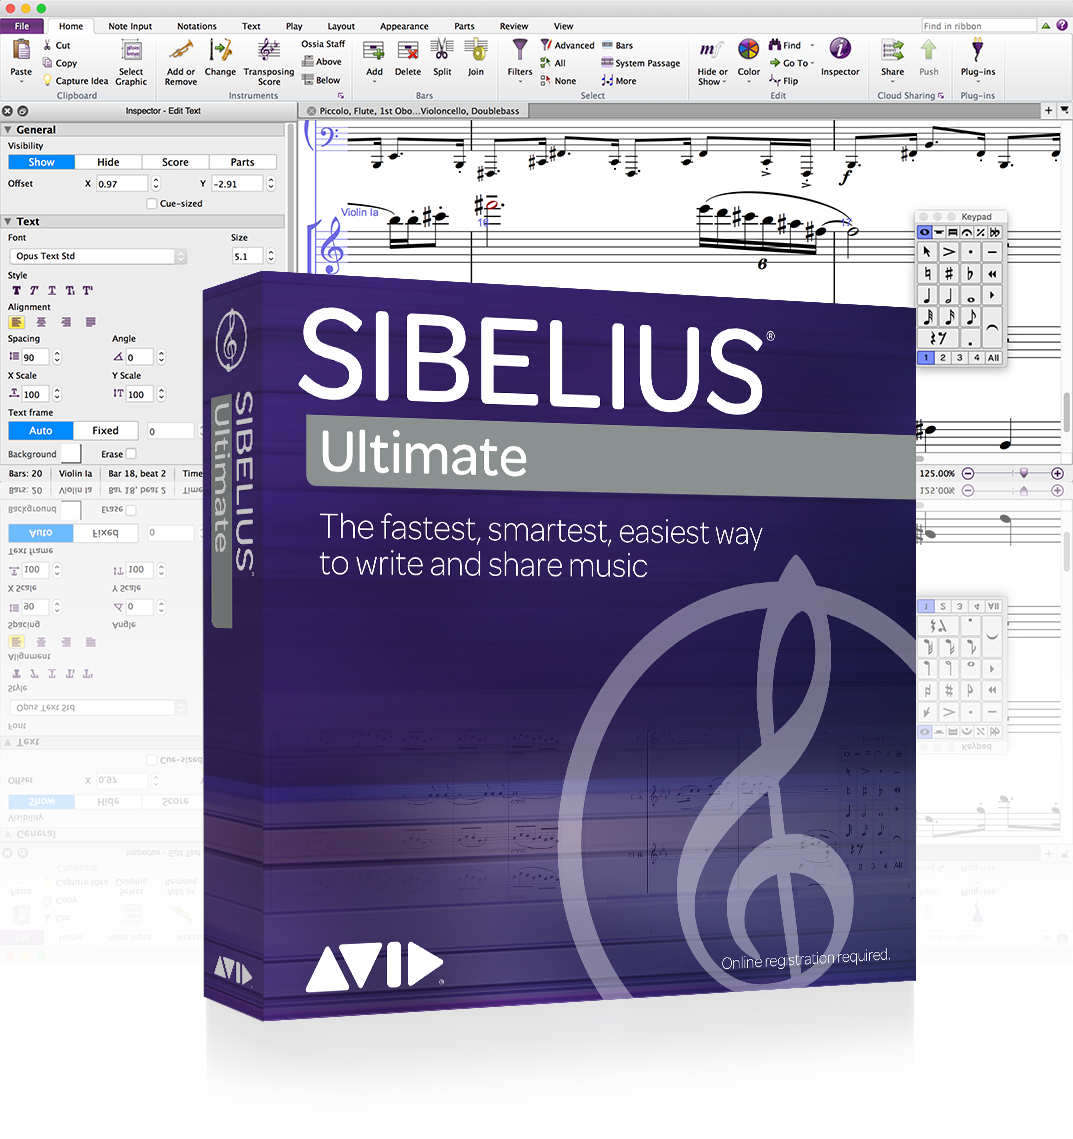 Avid Sibelius | Ultimate Perpetual License